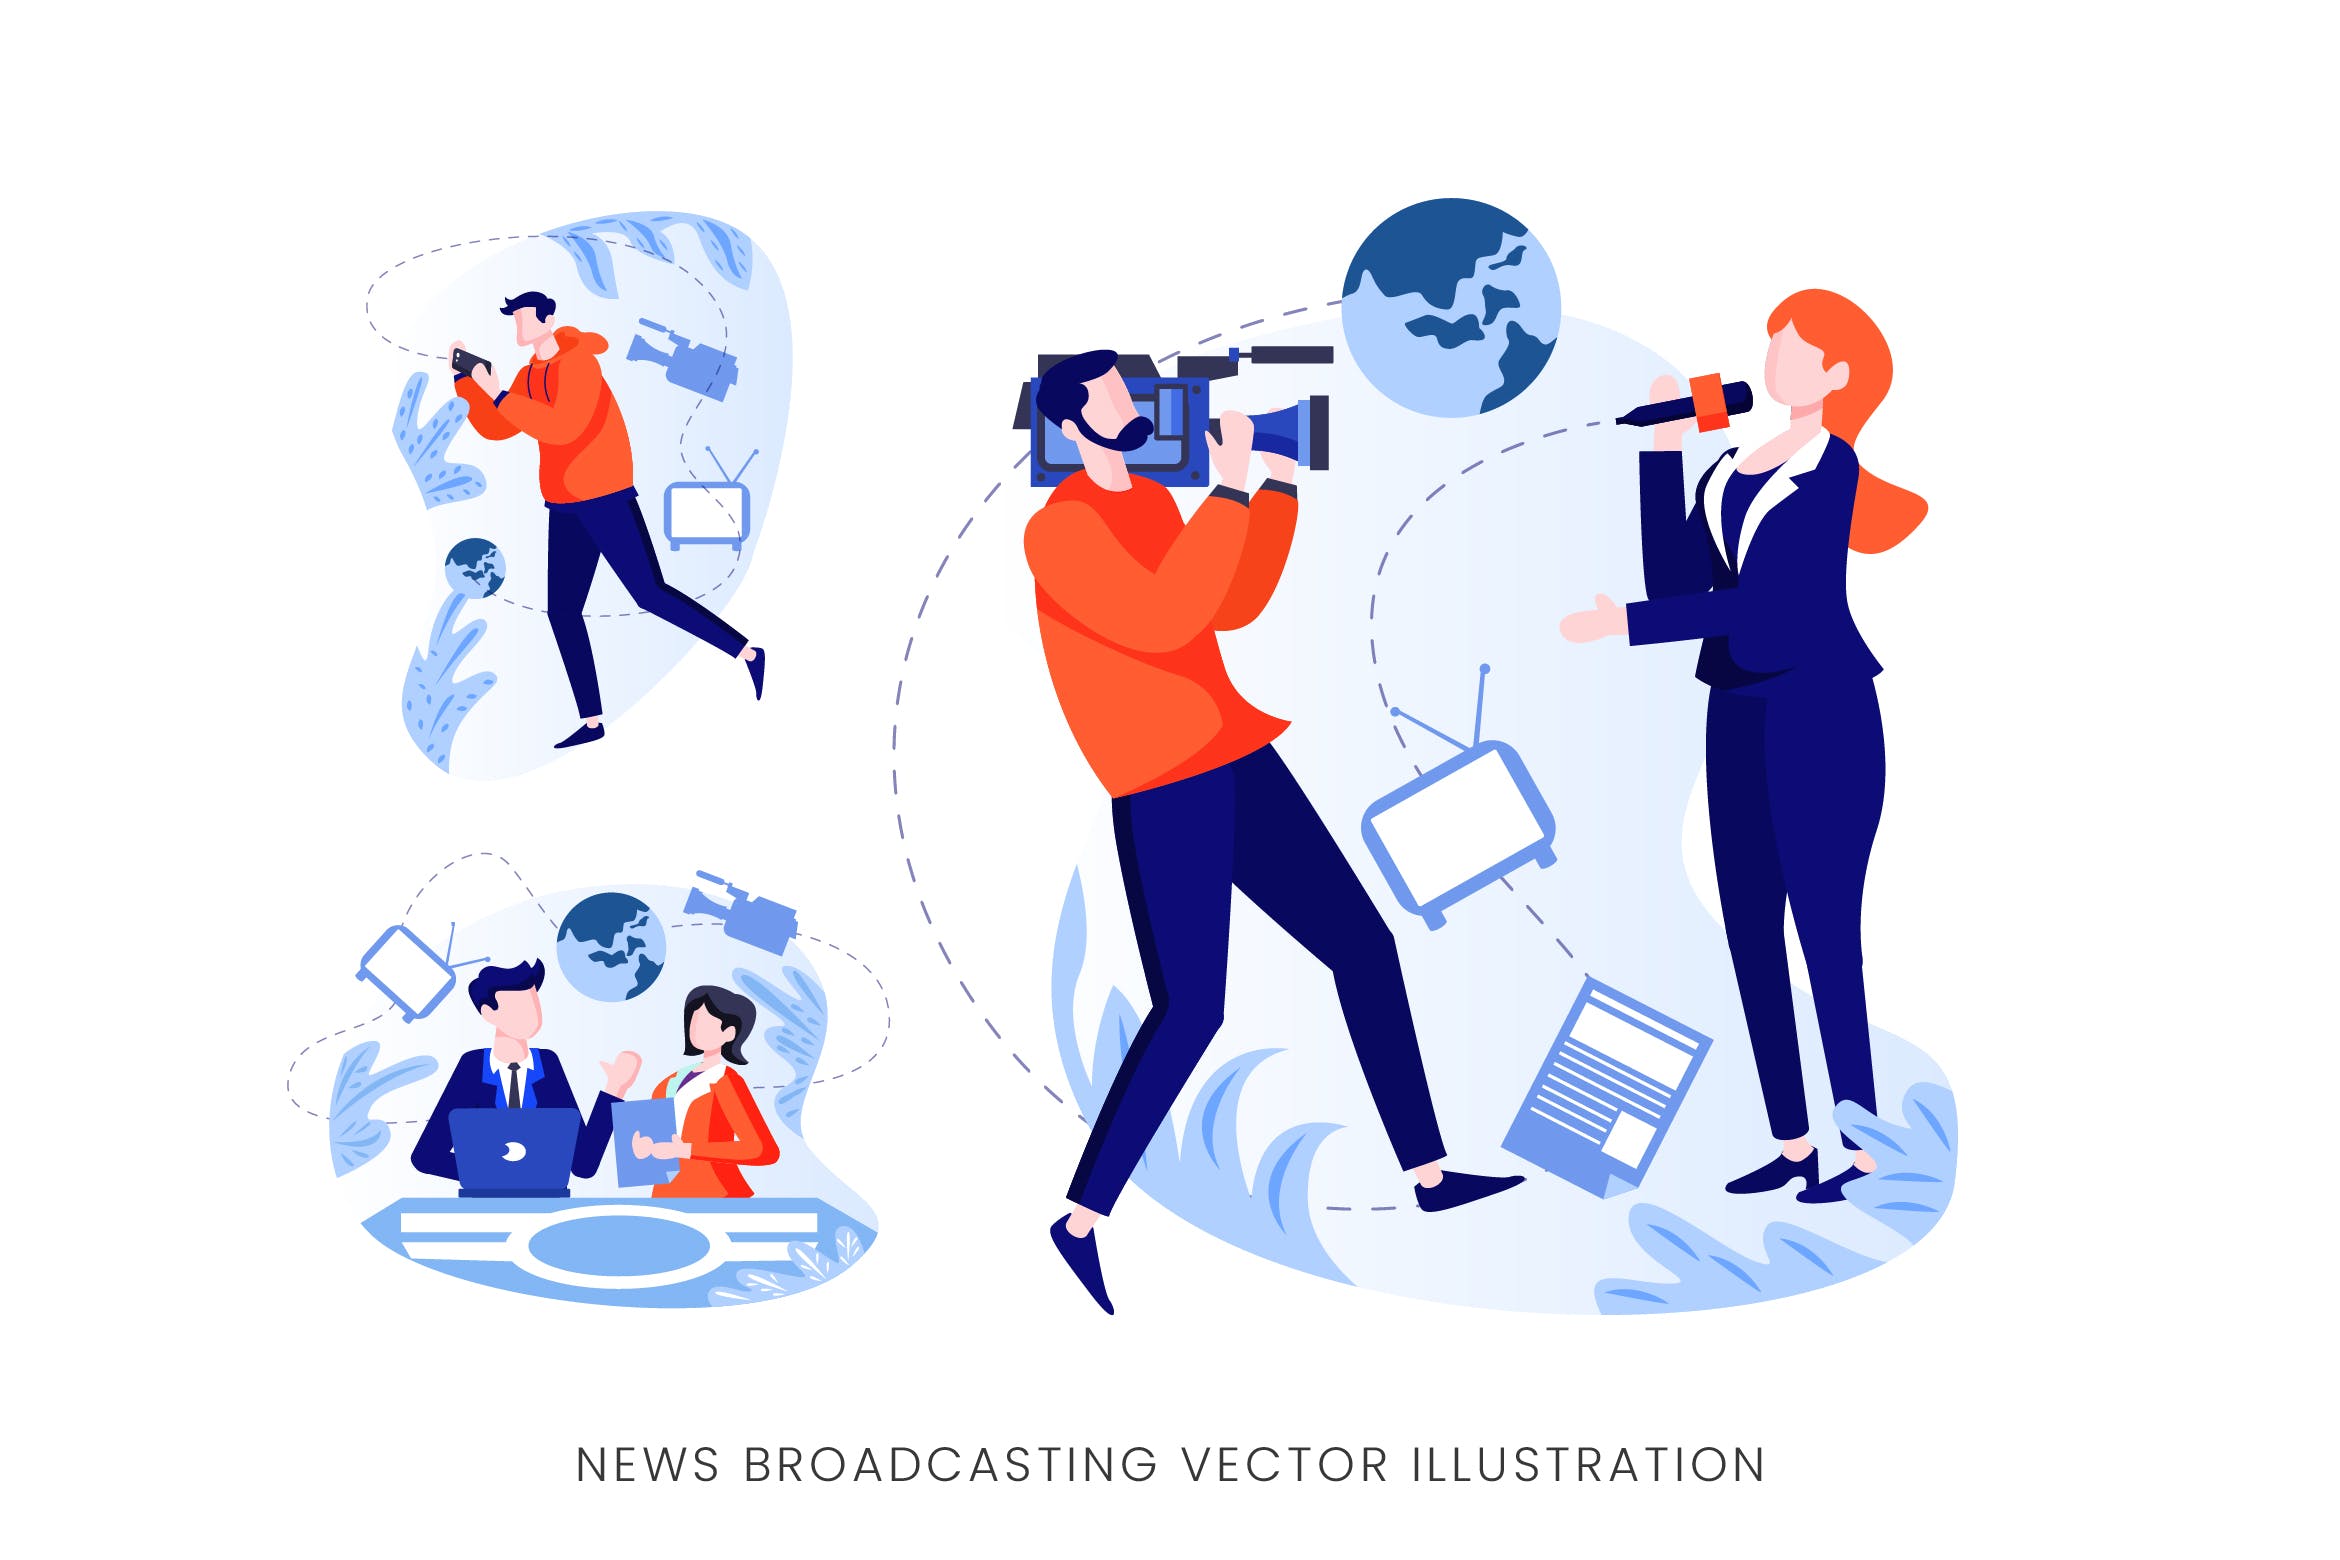 新闻广播工作者人物形象矢量手绘素材 News Broadcasting Vector Character Set插图